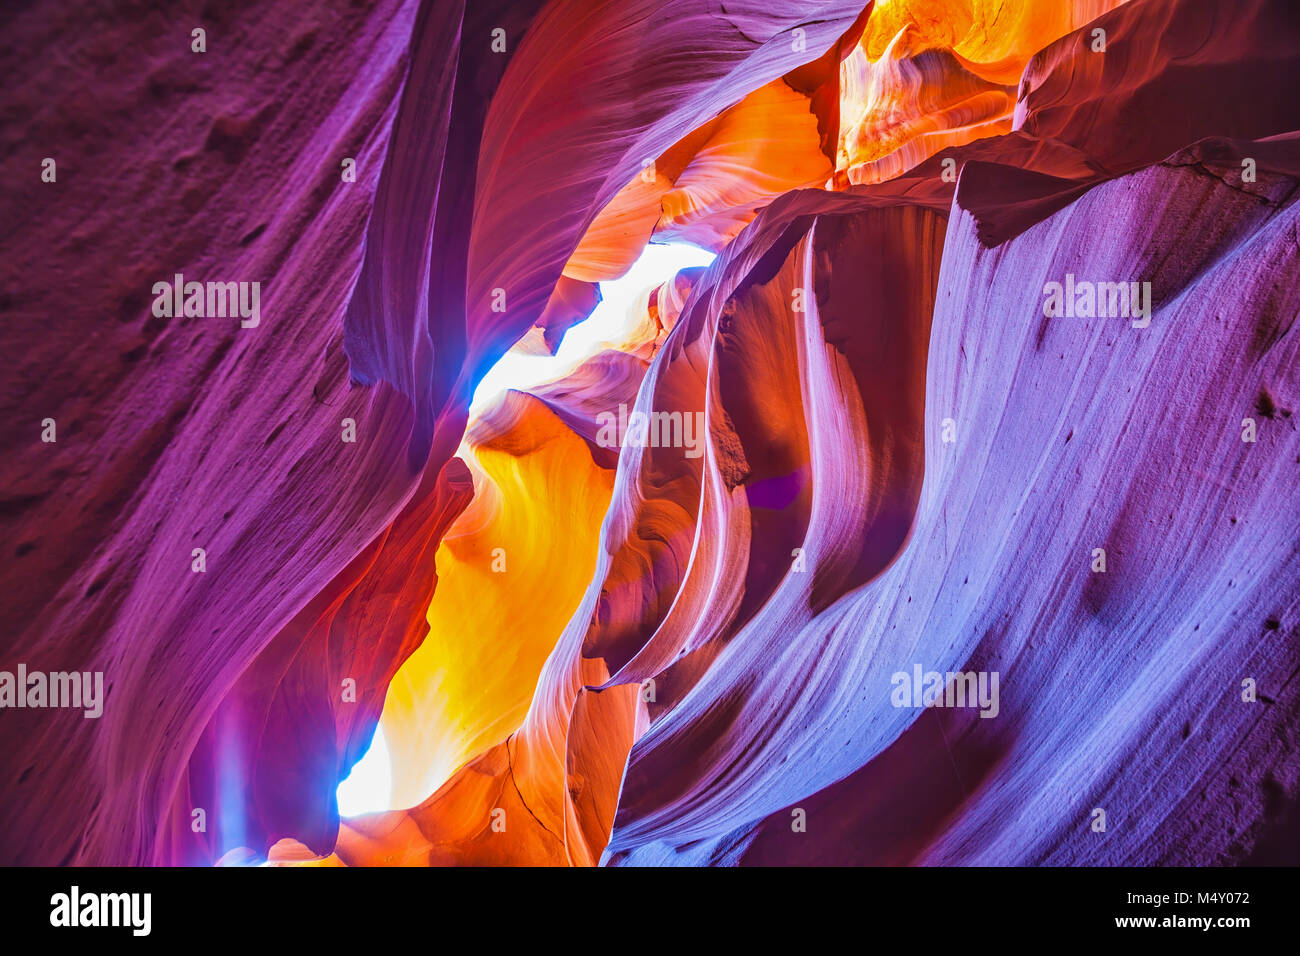 The purple hues slot canyon Antelope. Stock Photo